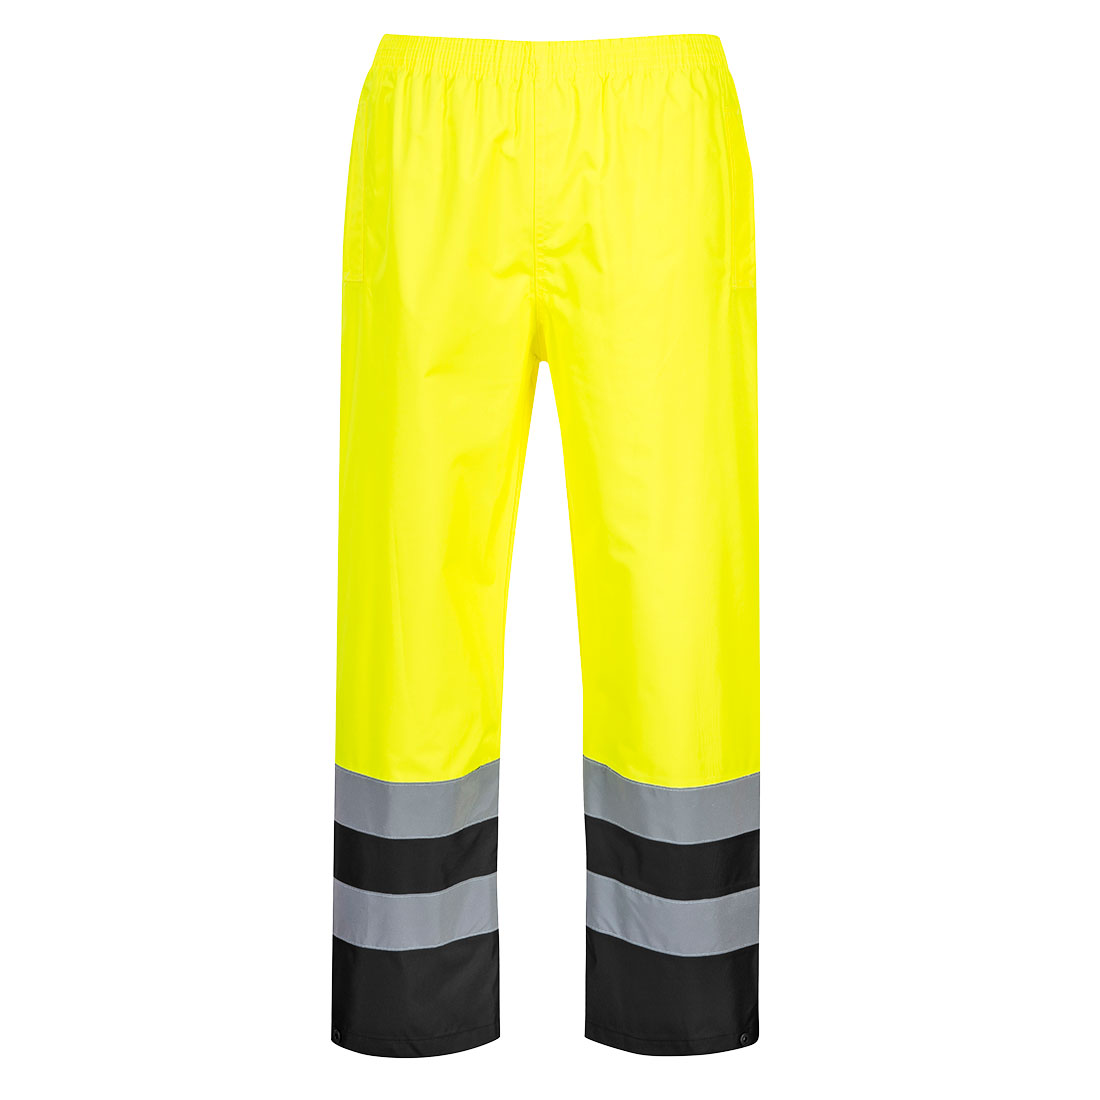 S486 - Dvoubarevné kalhoty Hi-Vis Traffic Velikost: L, Barva: žlutá/černá